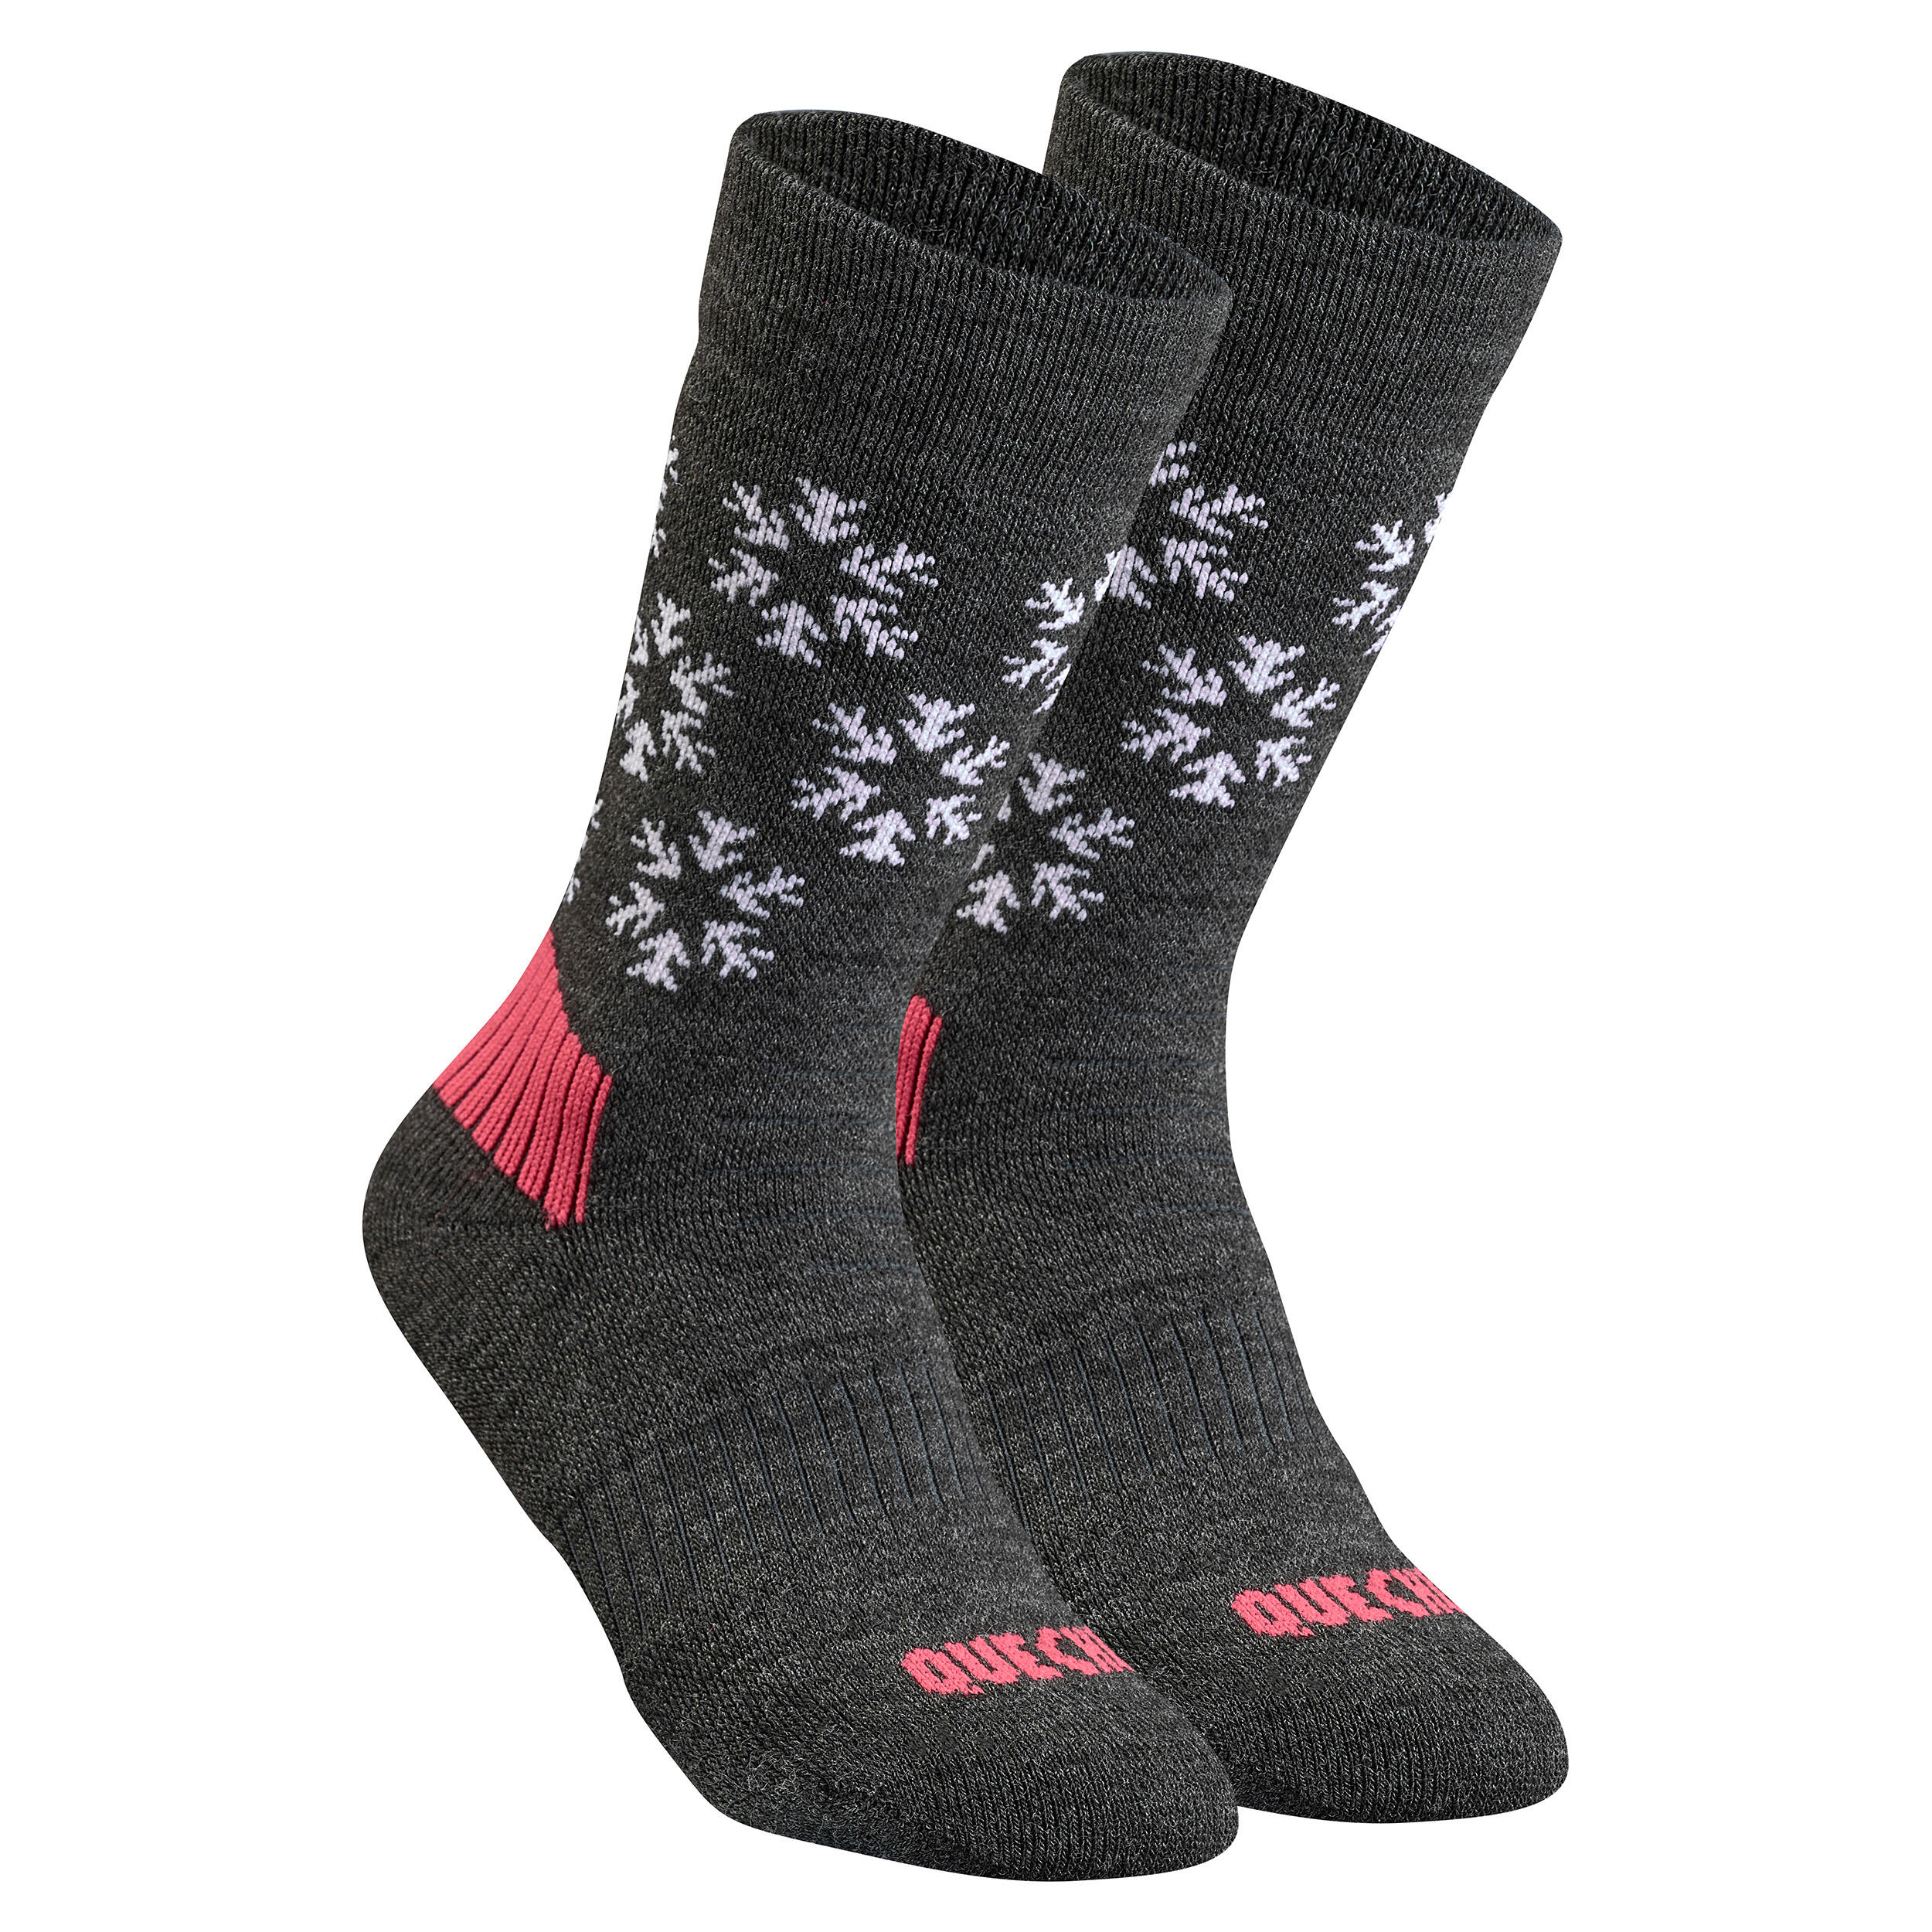 Kids’ Warm Hiking Socks SH100 Mid 2 Pairs 4/9